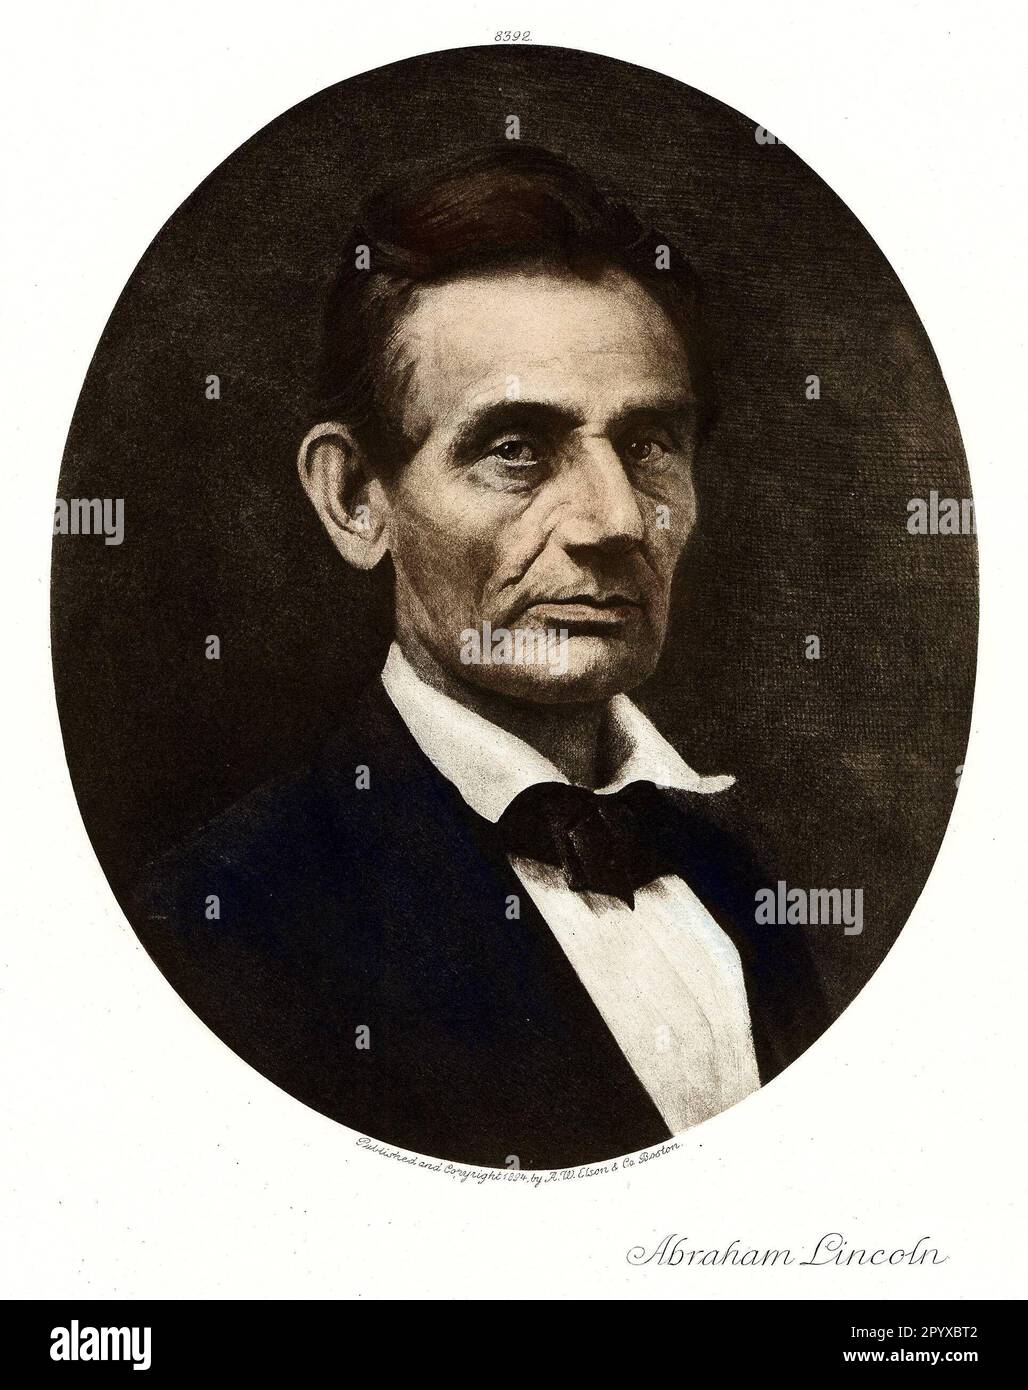 Abraham Lincoln (1809-1865), 16th Président des États-Unis. Peinture de 1894. Photo: Heliogravure, Corpus Imaginum, Collection Hanfstaengl. [traduction automatique] Banque D'Images